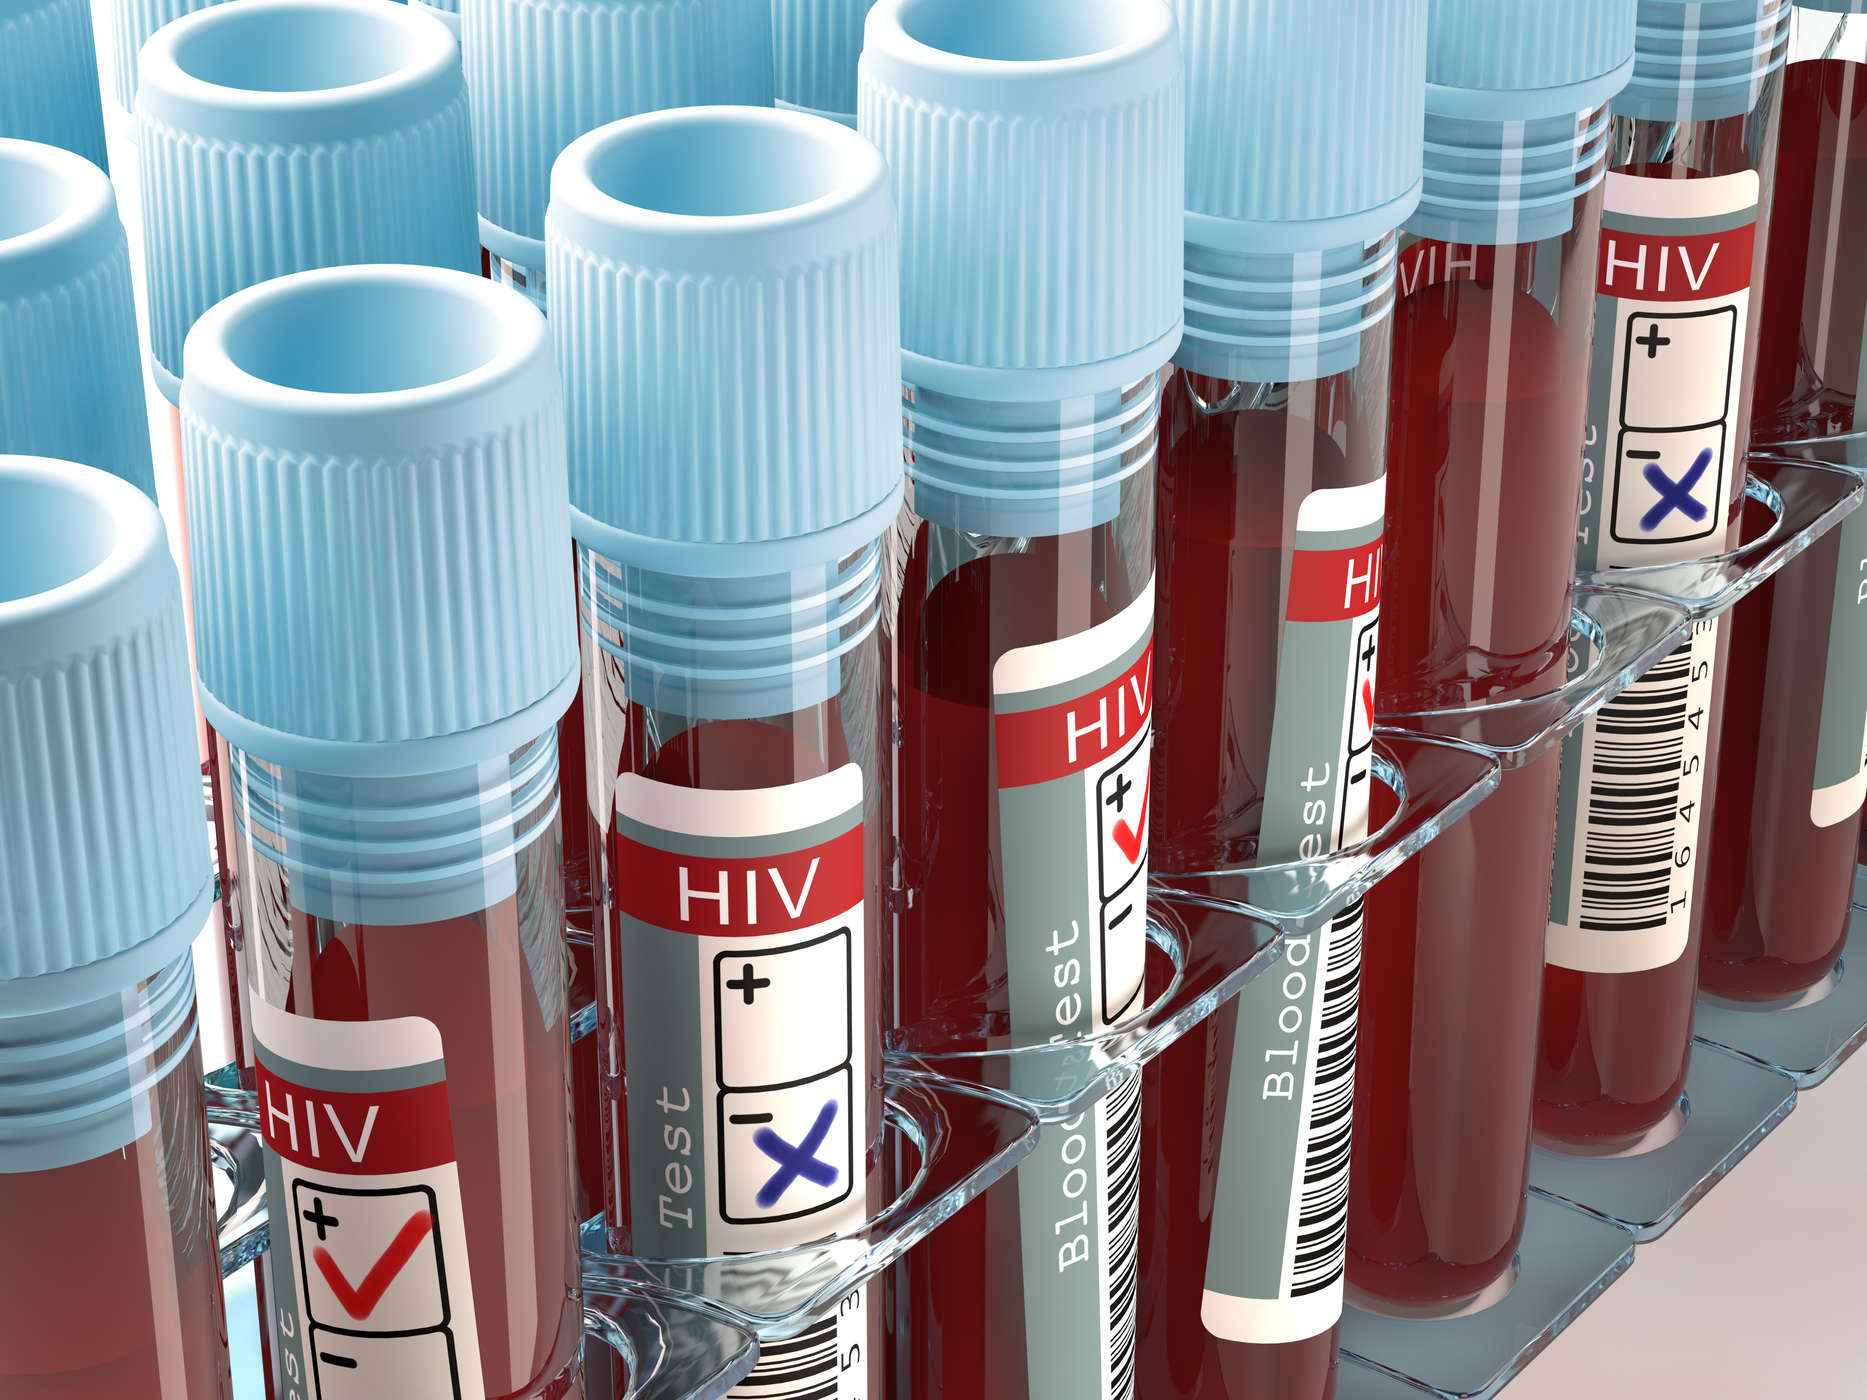 هل أنا معرض لخطر الإصابة بفيروس نقص المناعة البشرية؟ احذر من الأسباب المختلفة لفيروس نقص المناعة البشرية / الإيدز